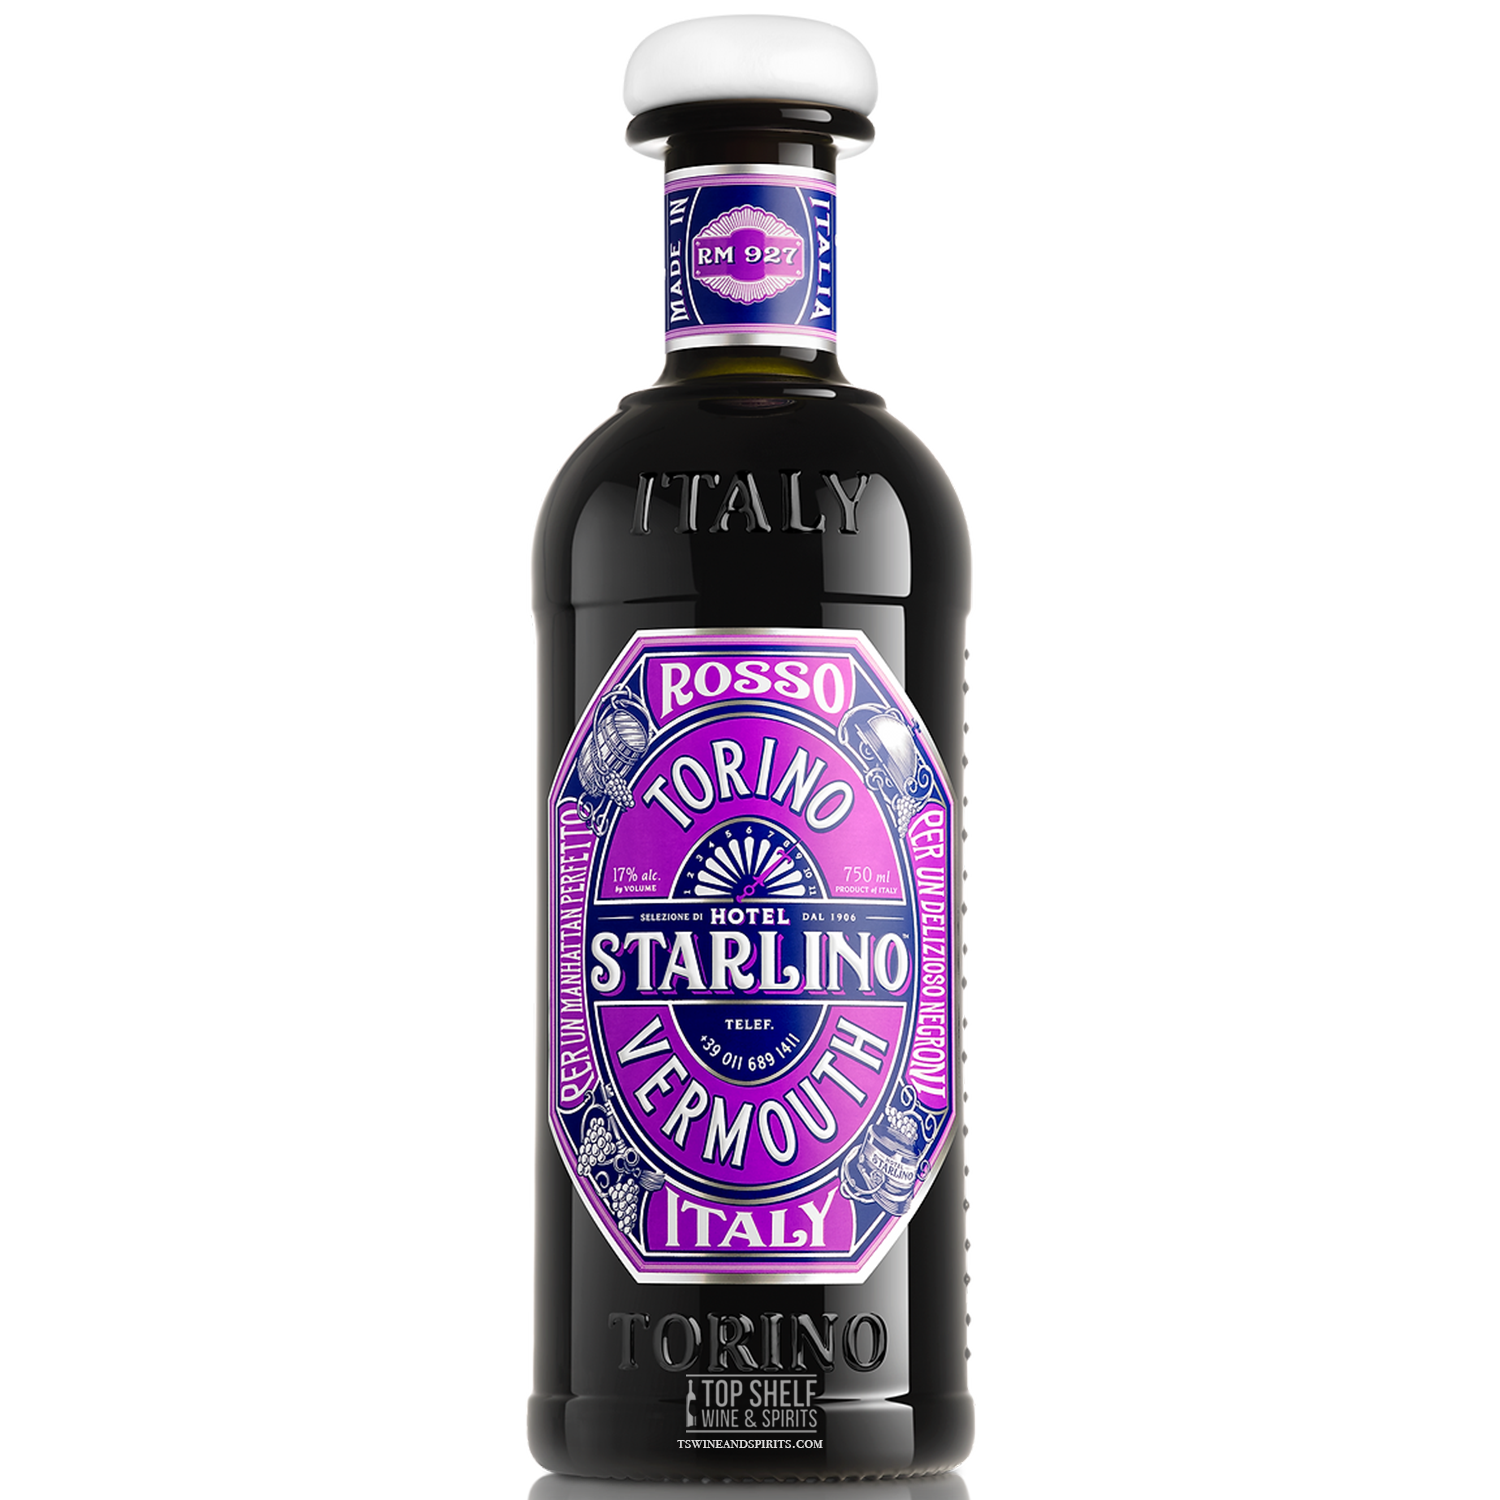 Hotel Starlino Rosso Torino Italian Vermouth